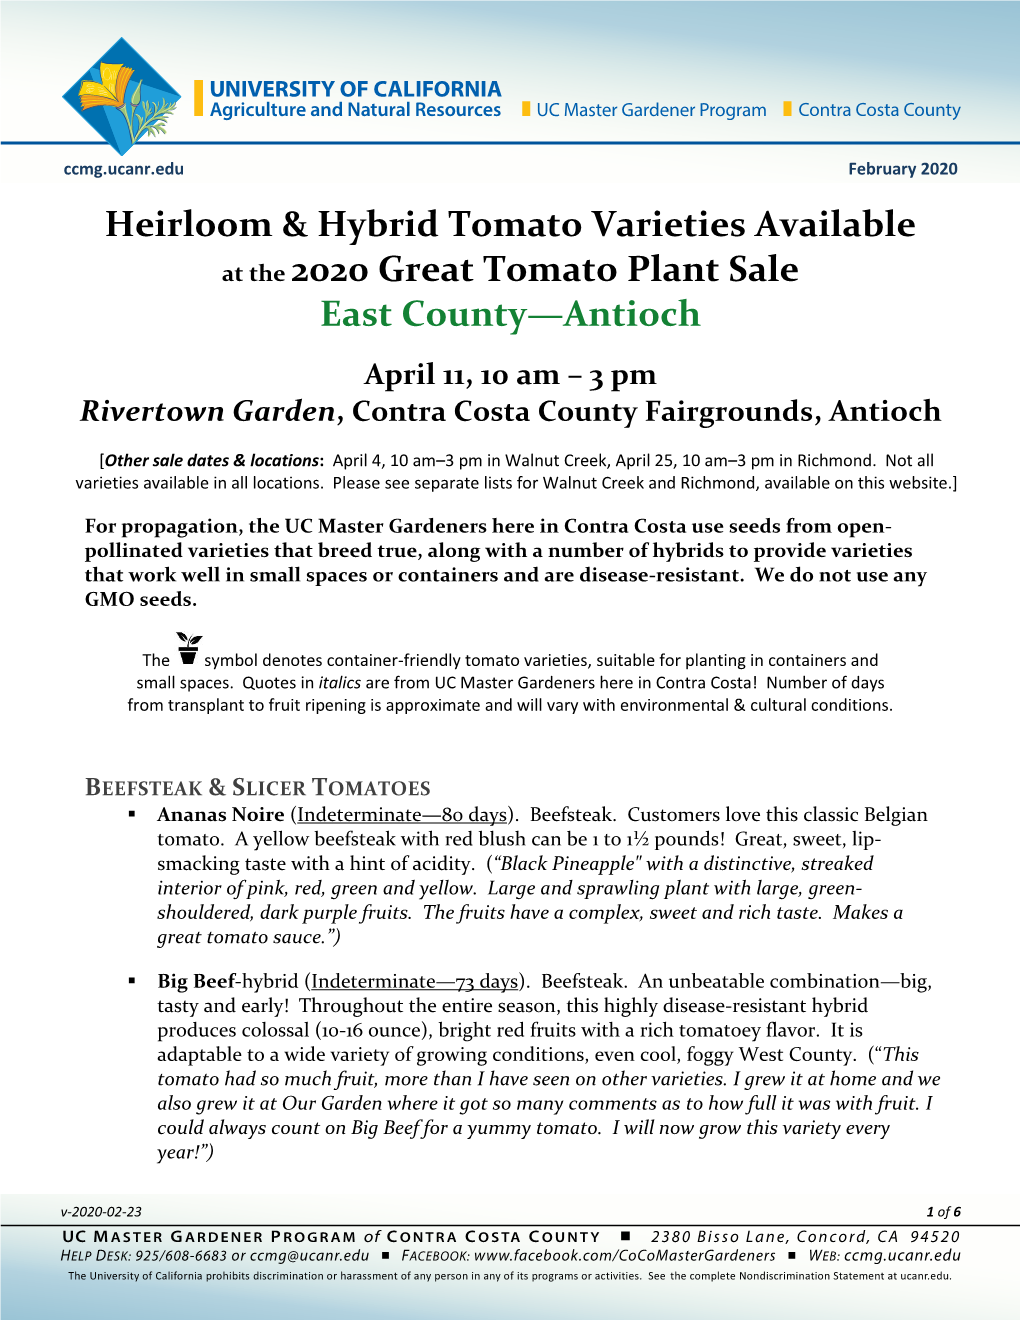 2020 GTPS Tomato Varieties-Antioch